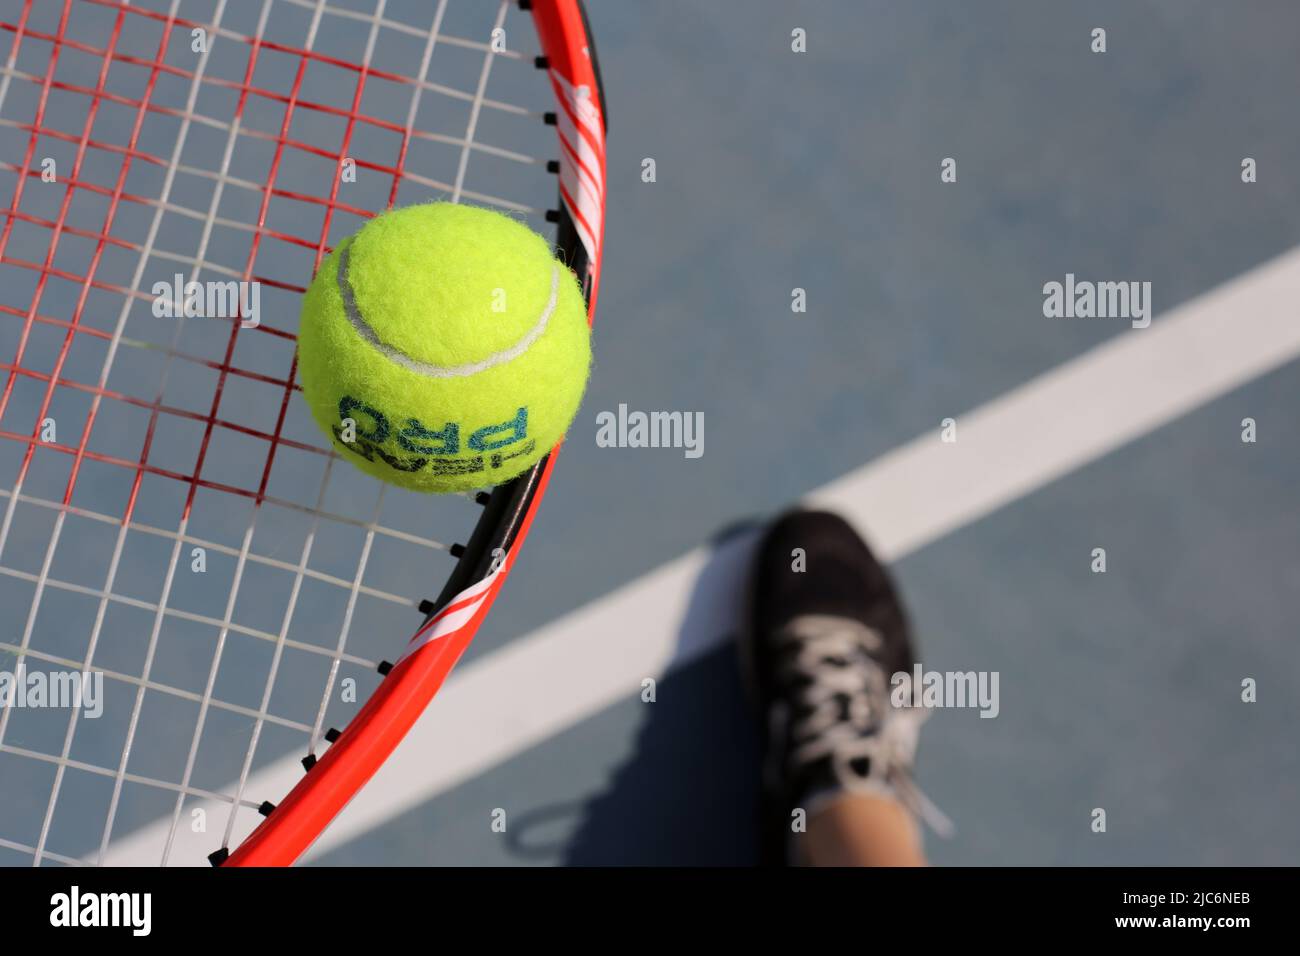 Staffa da tennis Red Wilson con palla da tennis Head Pro e scarpe nere  sotto di loro. Immagine a colori closeup dalla vista ad angolo alto.  Fotografato nella soleggiata Dubai Foto stock -